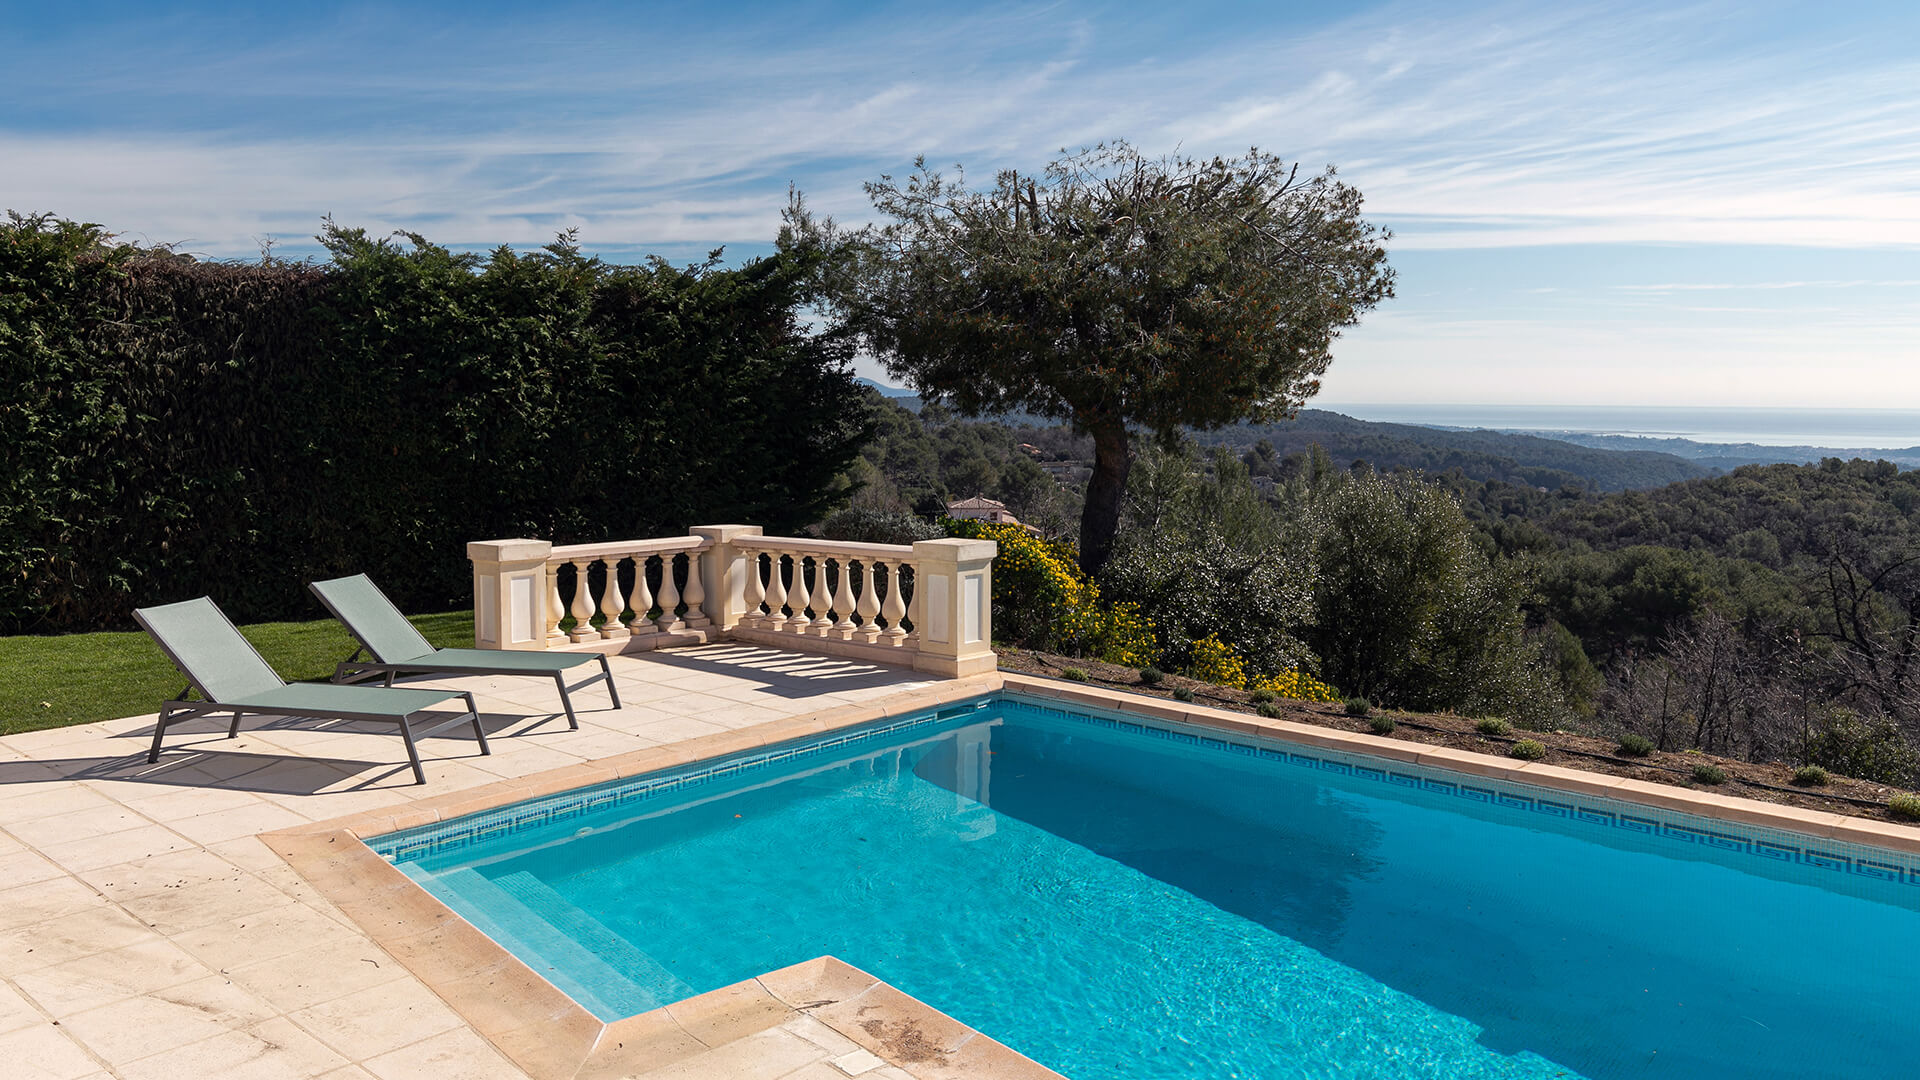 Stor swimmingpool i feriebolig med dejlig udsigt i Sydfrankrig